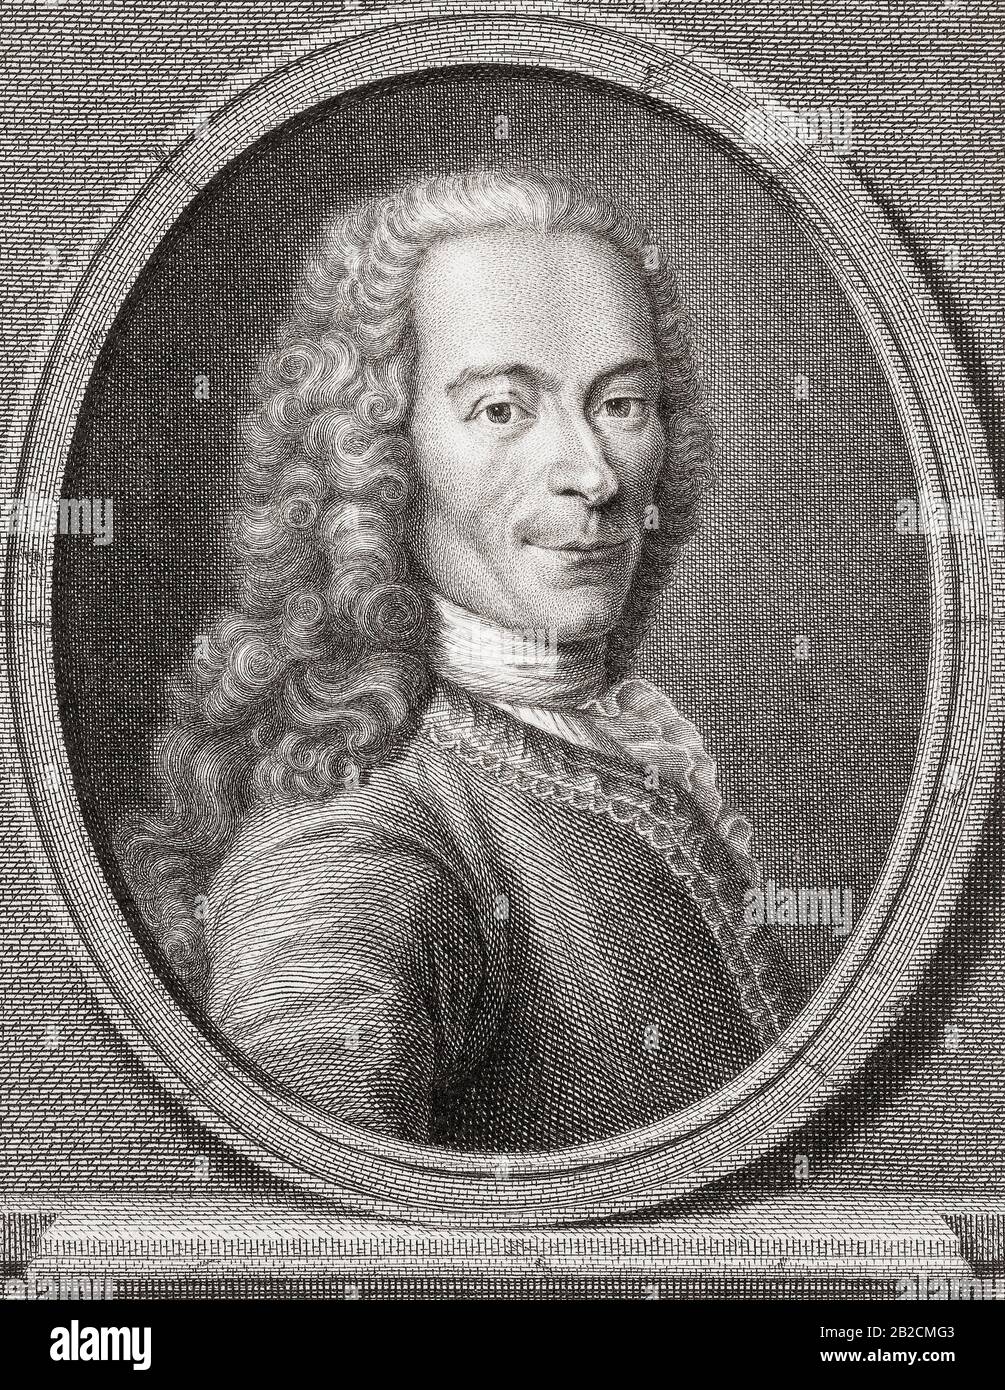 François-Marie Arouet, 1694 - 297, am bekanntesten durch seine Frau de plume von Voltaire. Französischer Schriftsteller, Historiker und Philosoph der Aufklärung. Stockfoto